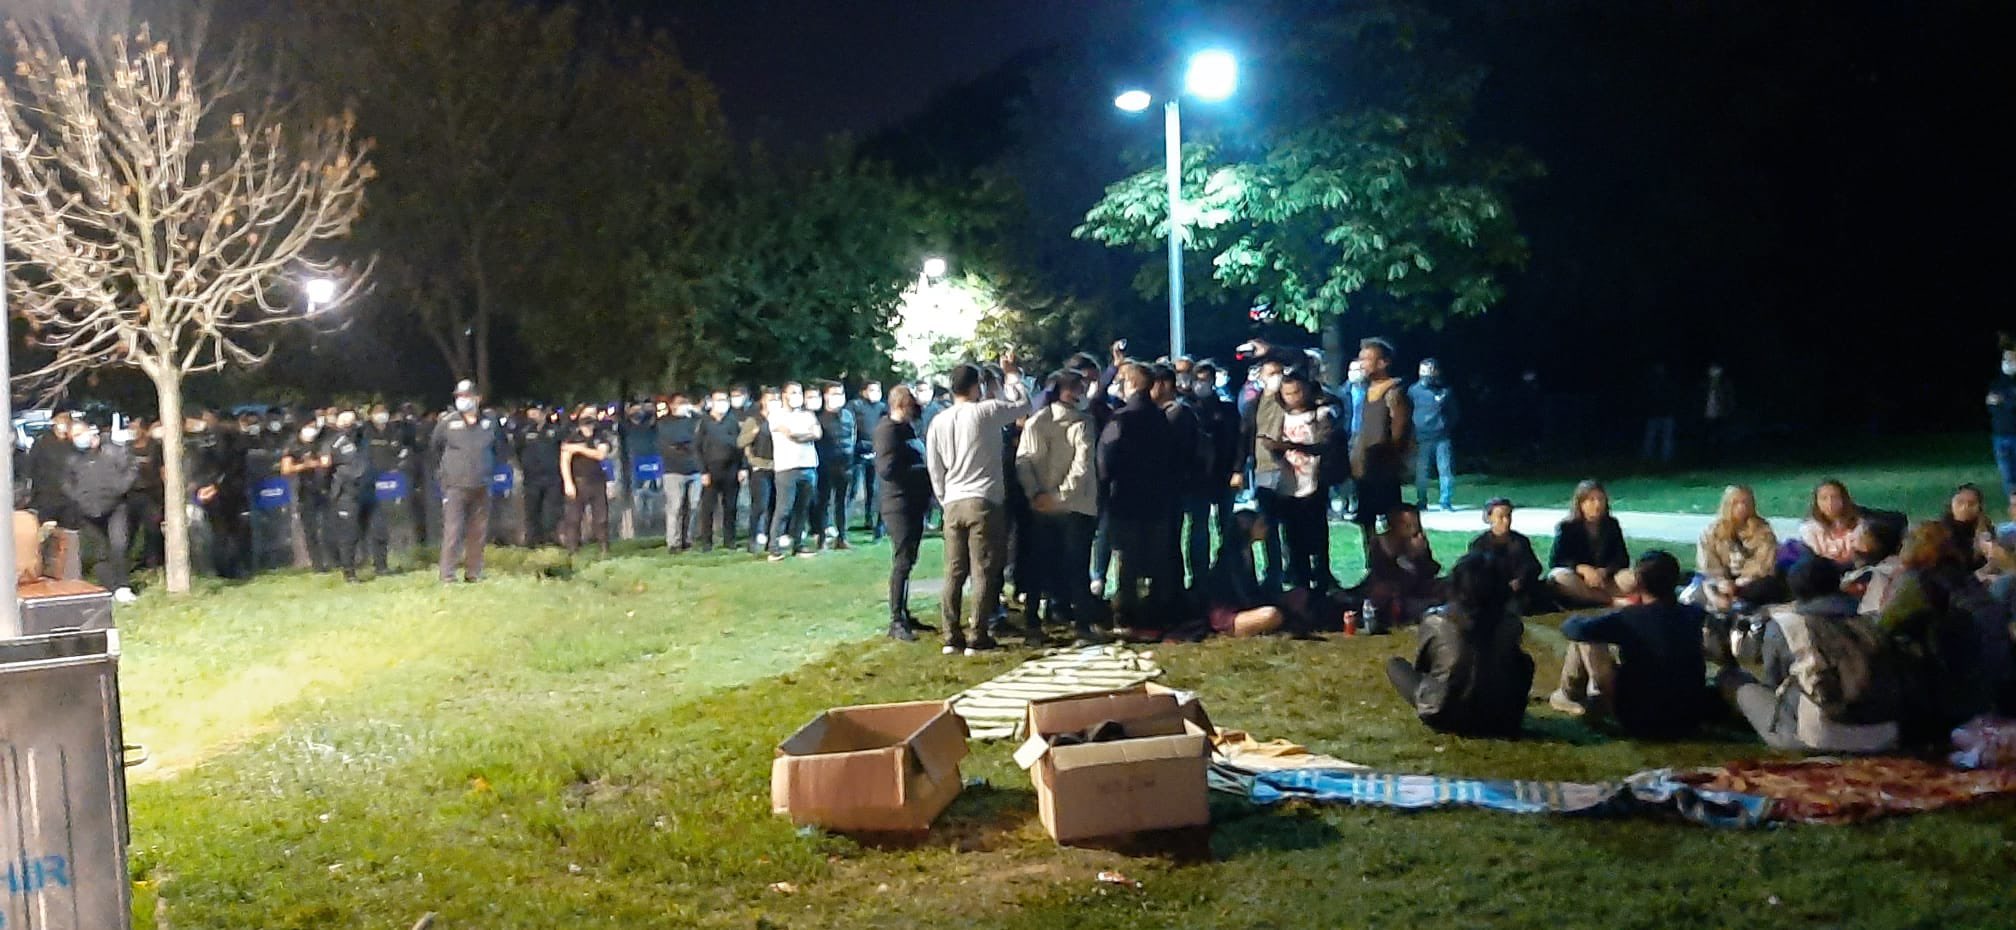 Barınama sorunu yaşayan öğrencilerin Kadıköy'deki eylemine müdahale